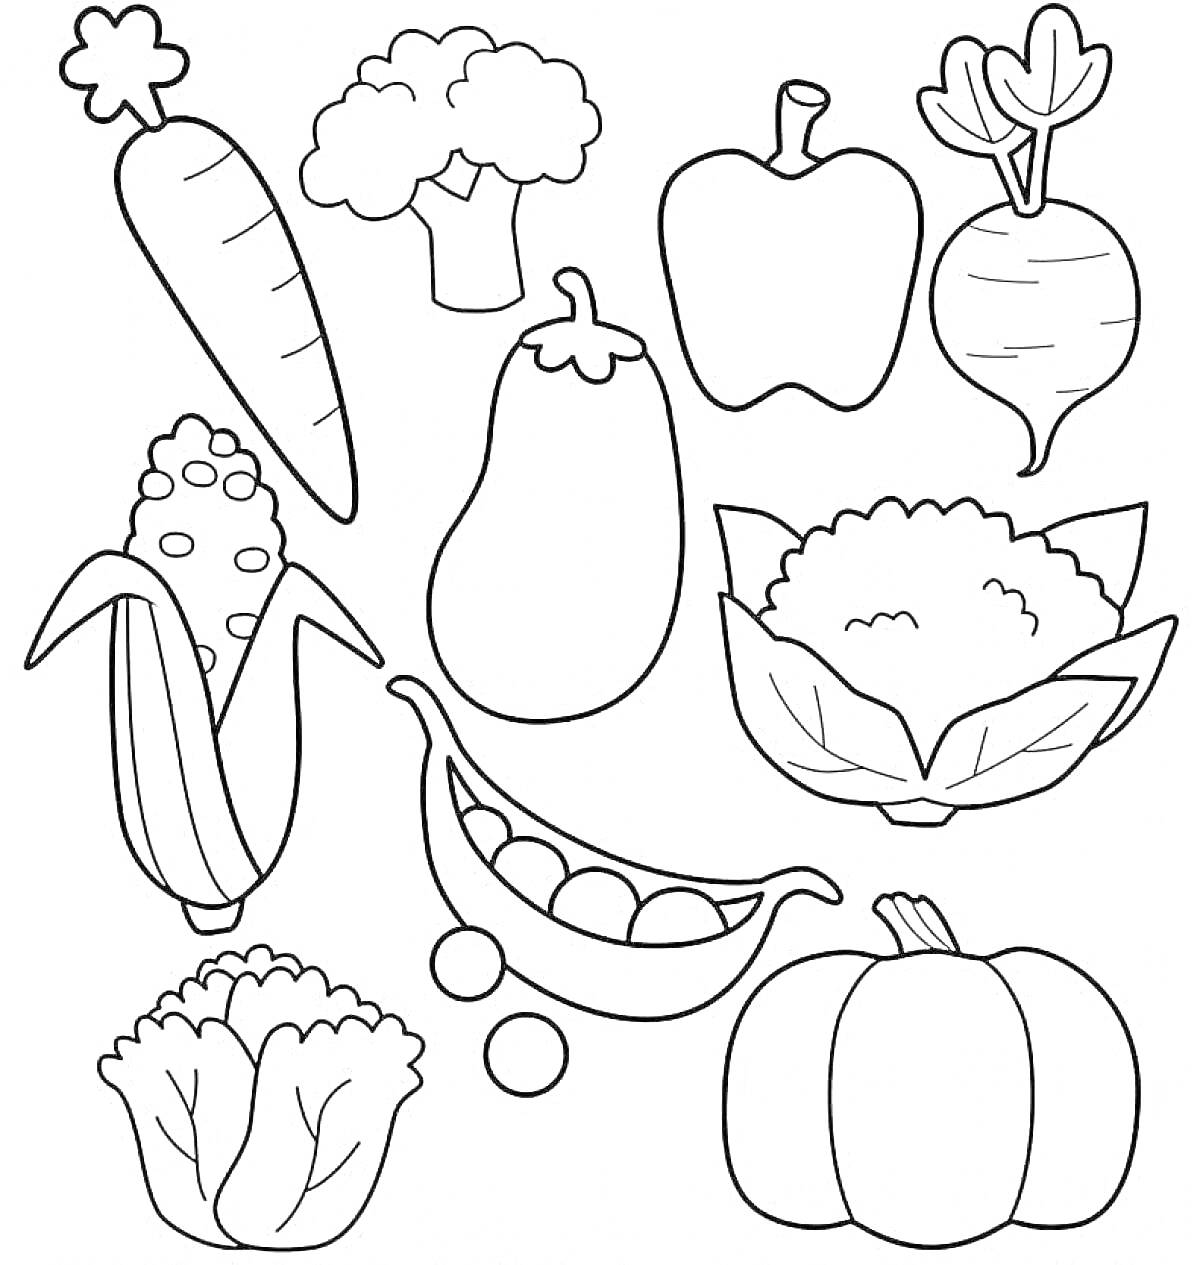 На раскраске изображено: Овощи, Морковь, Брокколи, Перец, Свекла, Баклажан, Капуста, Тыква, Кукуруза, Цветная капуста